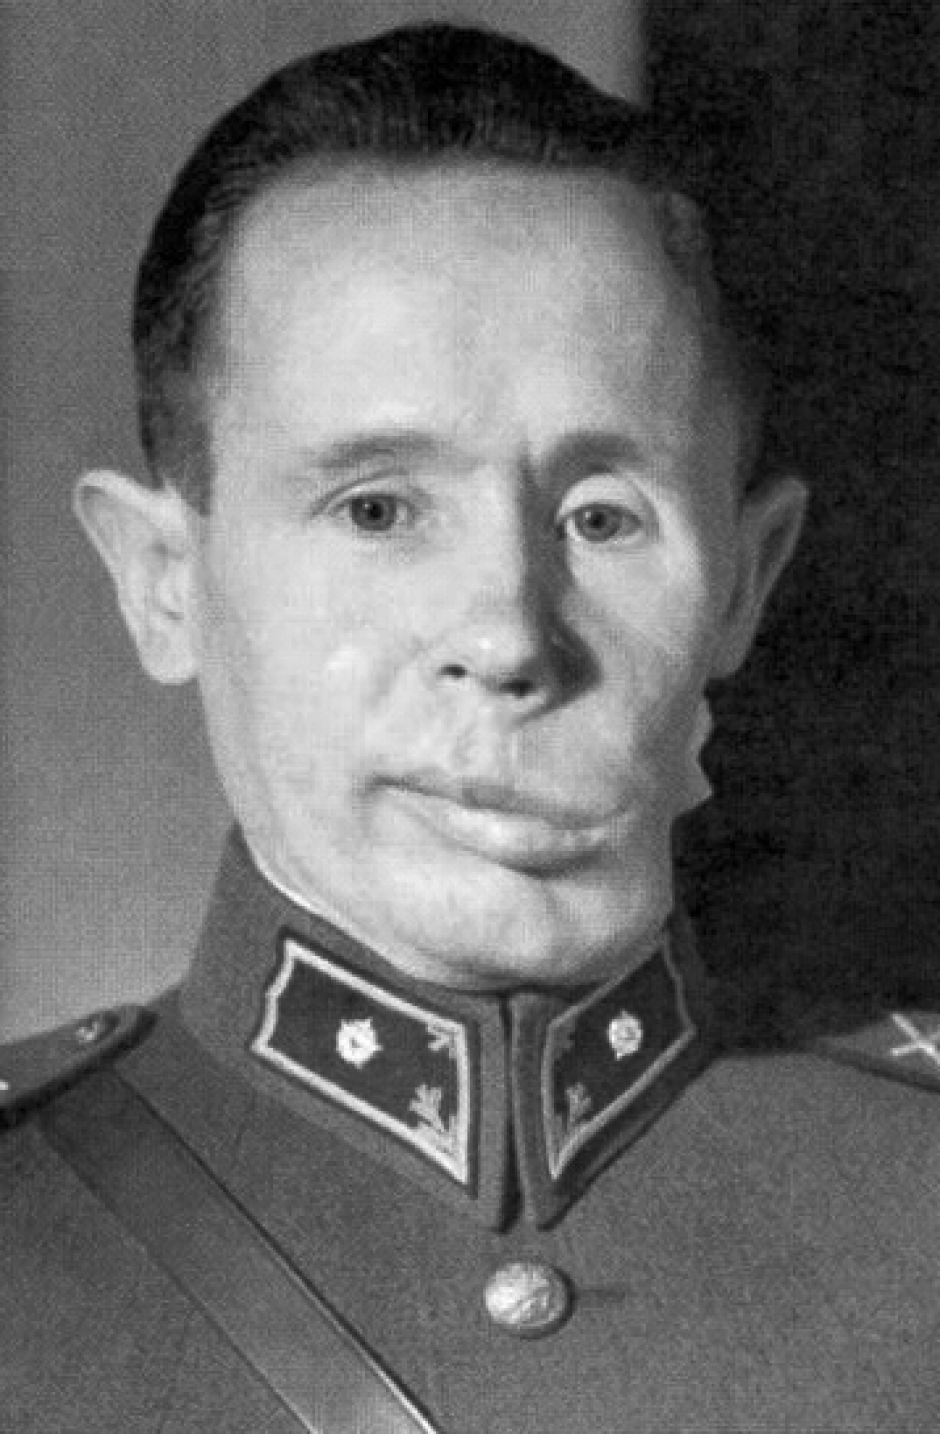 Simo Häyhä en 1940, con su mandíbula deformada a causa de la herida provocada por un proyectil enemigo